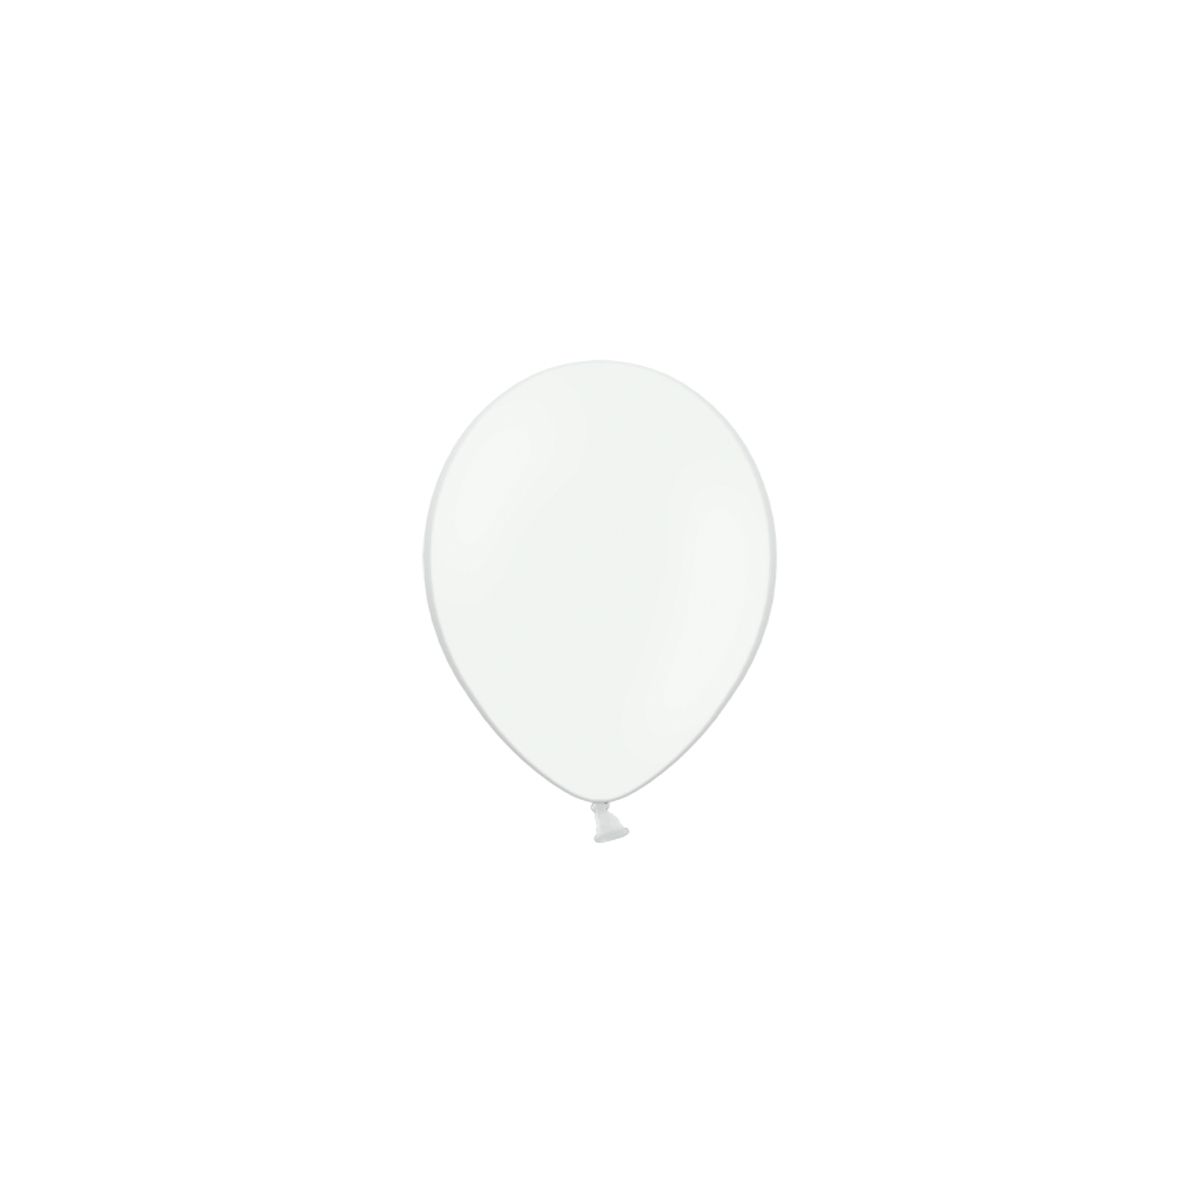 Balon gumowy Partydeco pastelowy 100 szt biały (12P-002)